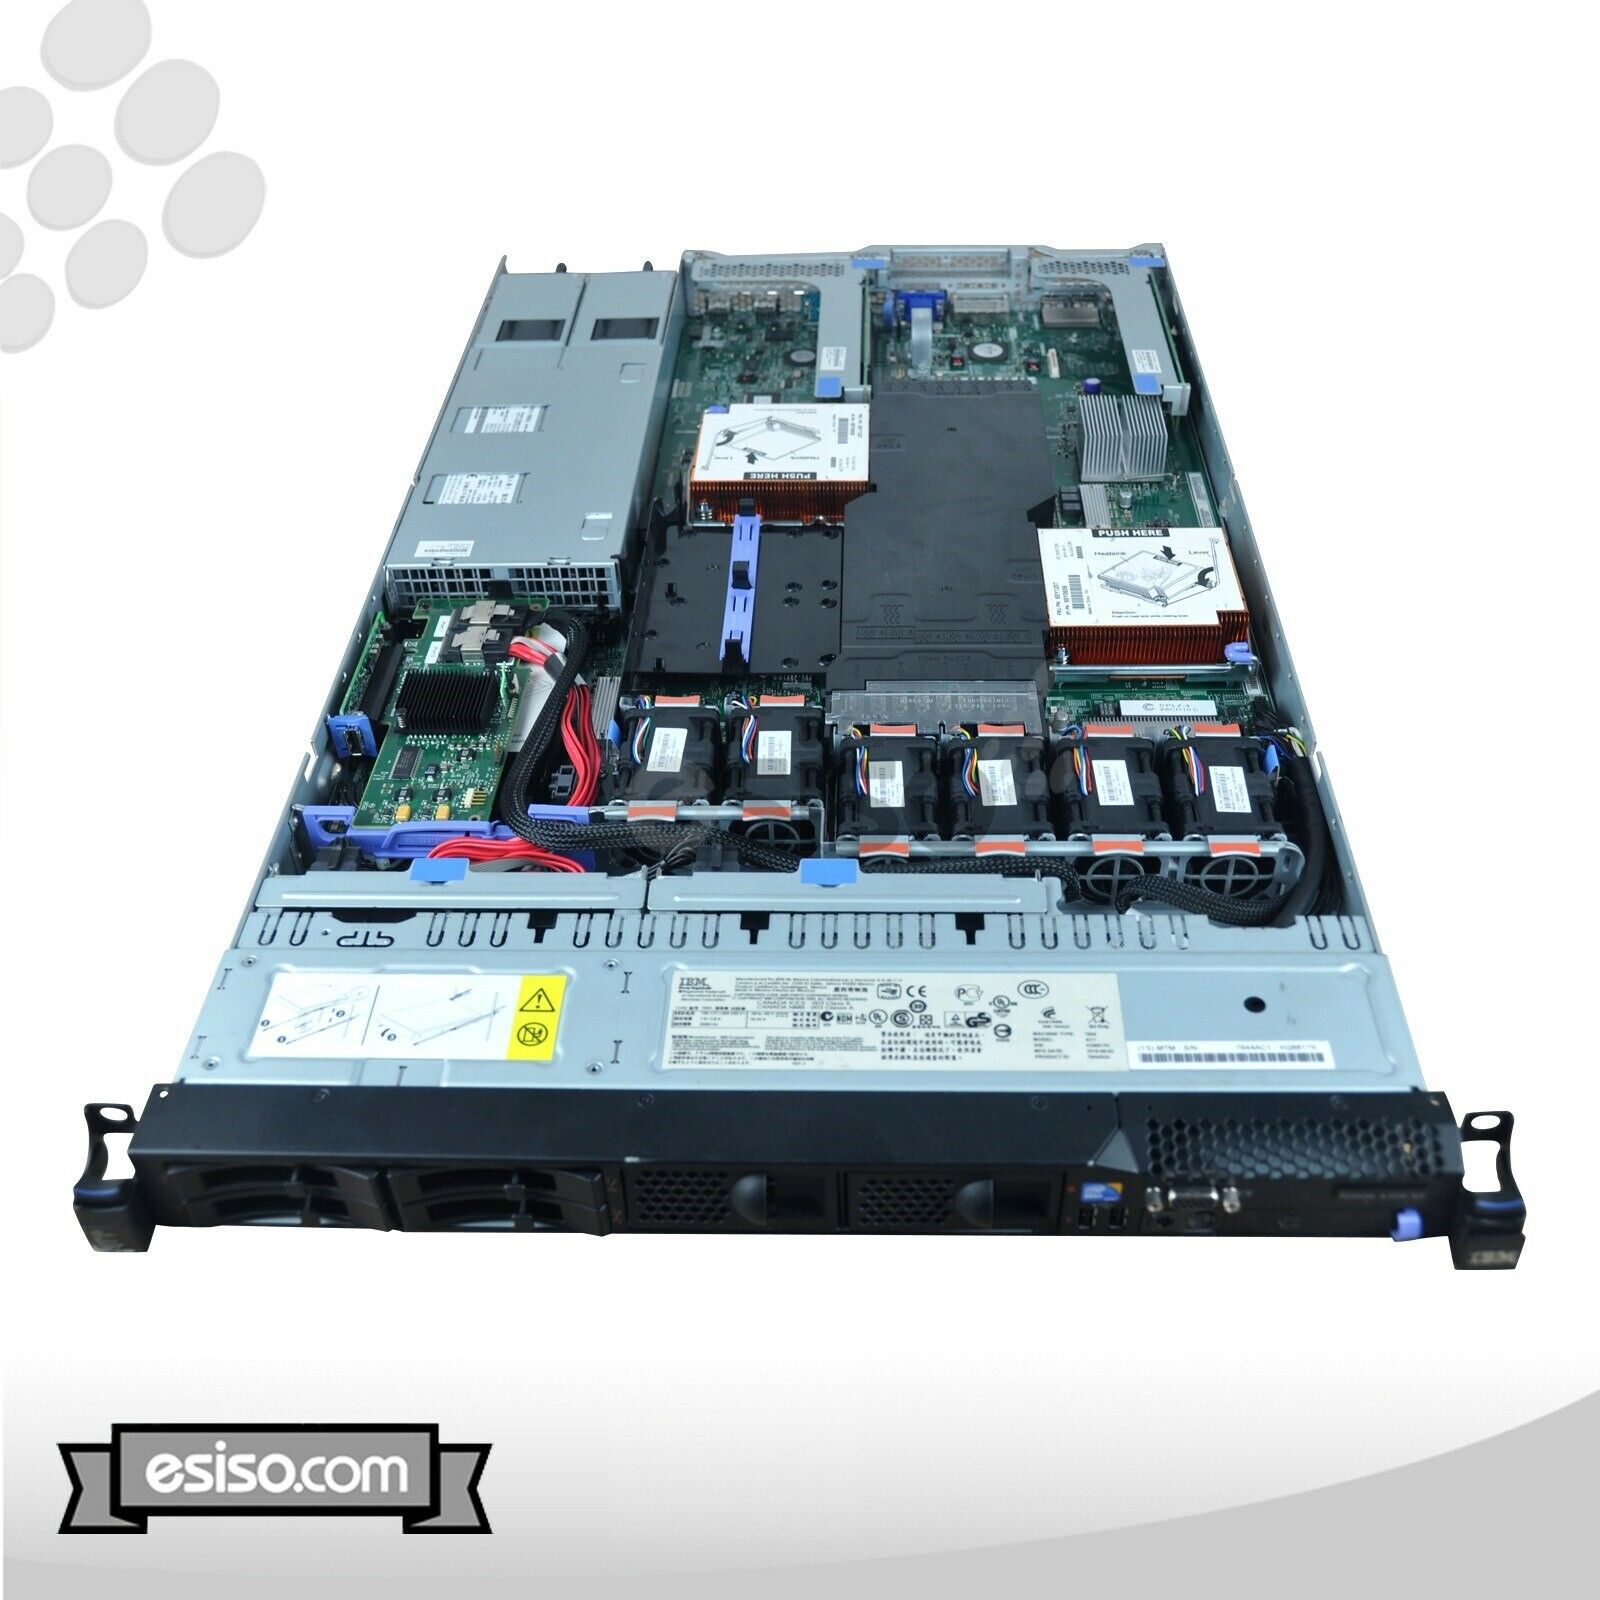 IBM System x3550 M3 7944-AC1 2x SIX CORE L5640 2.26GHz 48GB RAM 2x 600GB 10K SAS